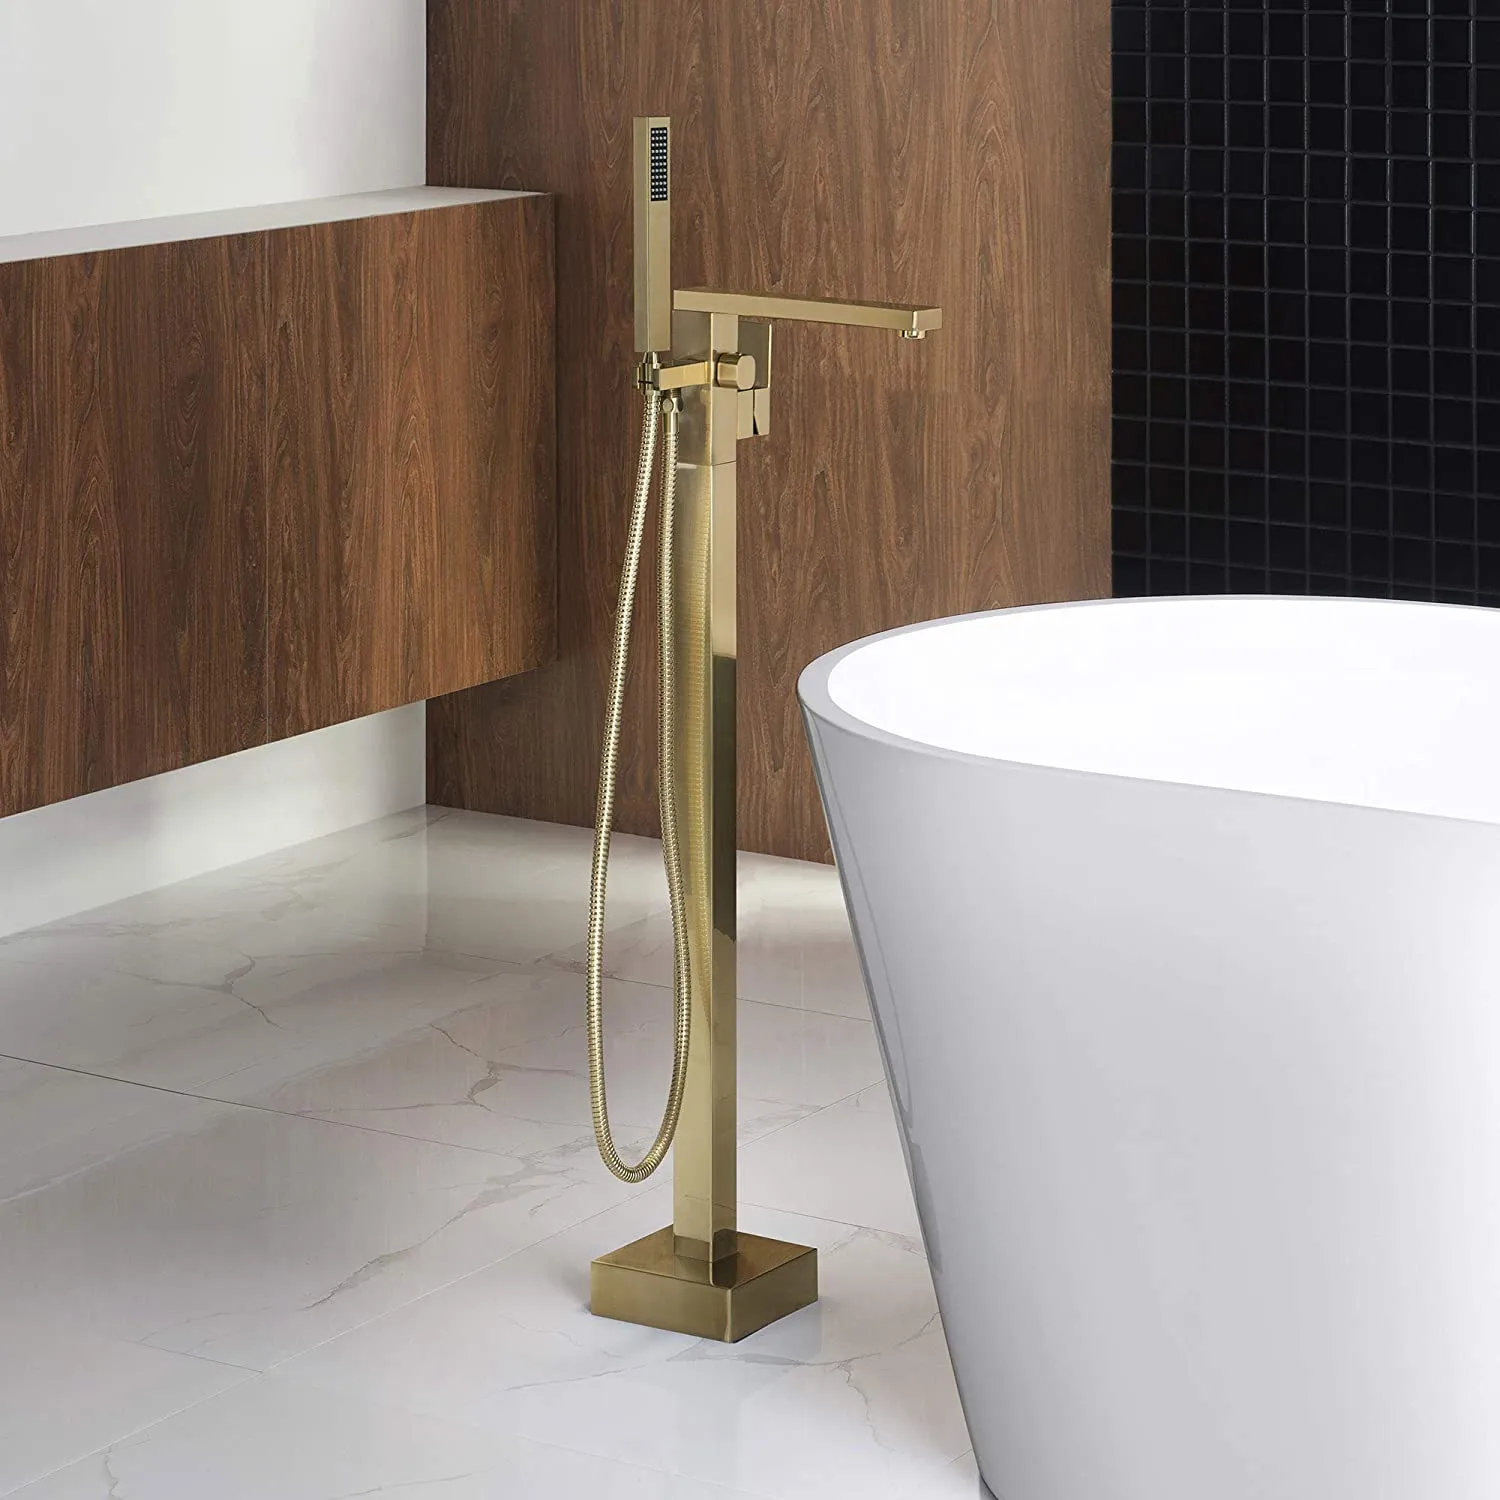 욕조 수도꼭지 욕실 황동 욕조 믹서 물는 tapware 광장 디자인 360 ° 회전 스파우트는 골드 플로어 스탠드 장착 솔질